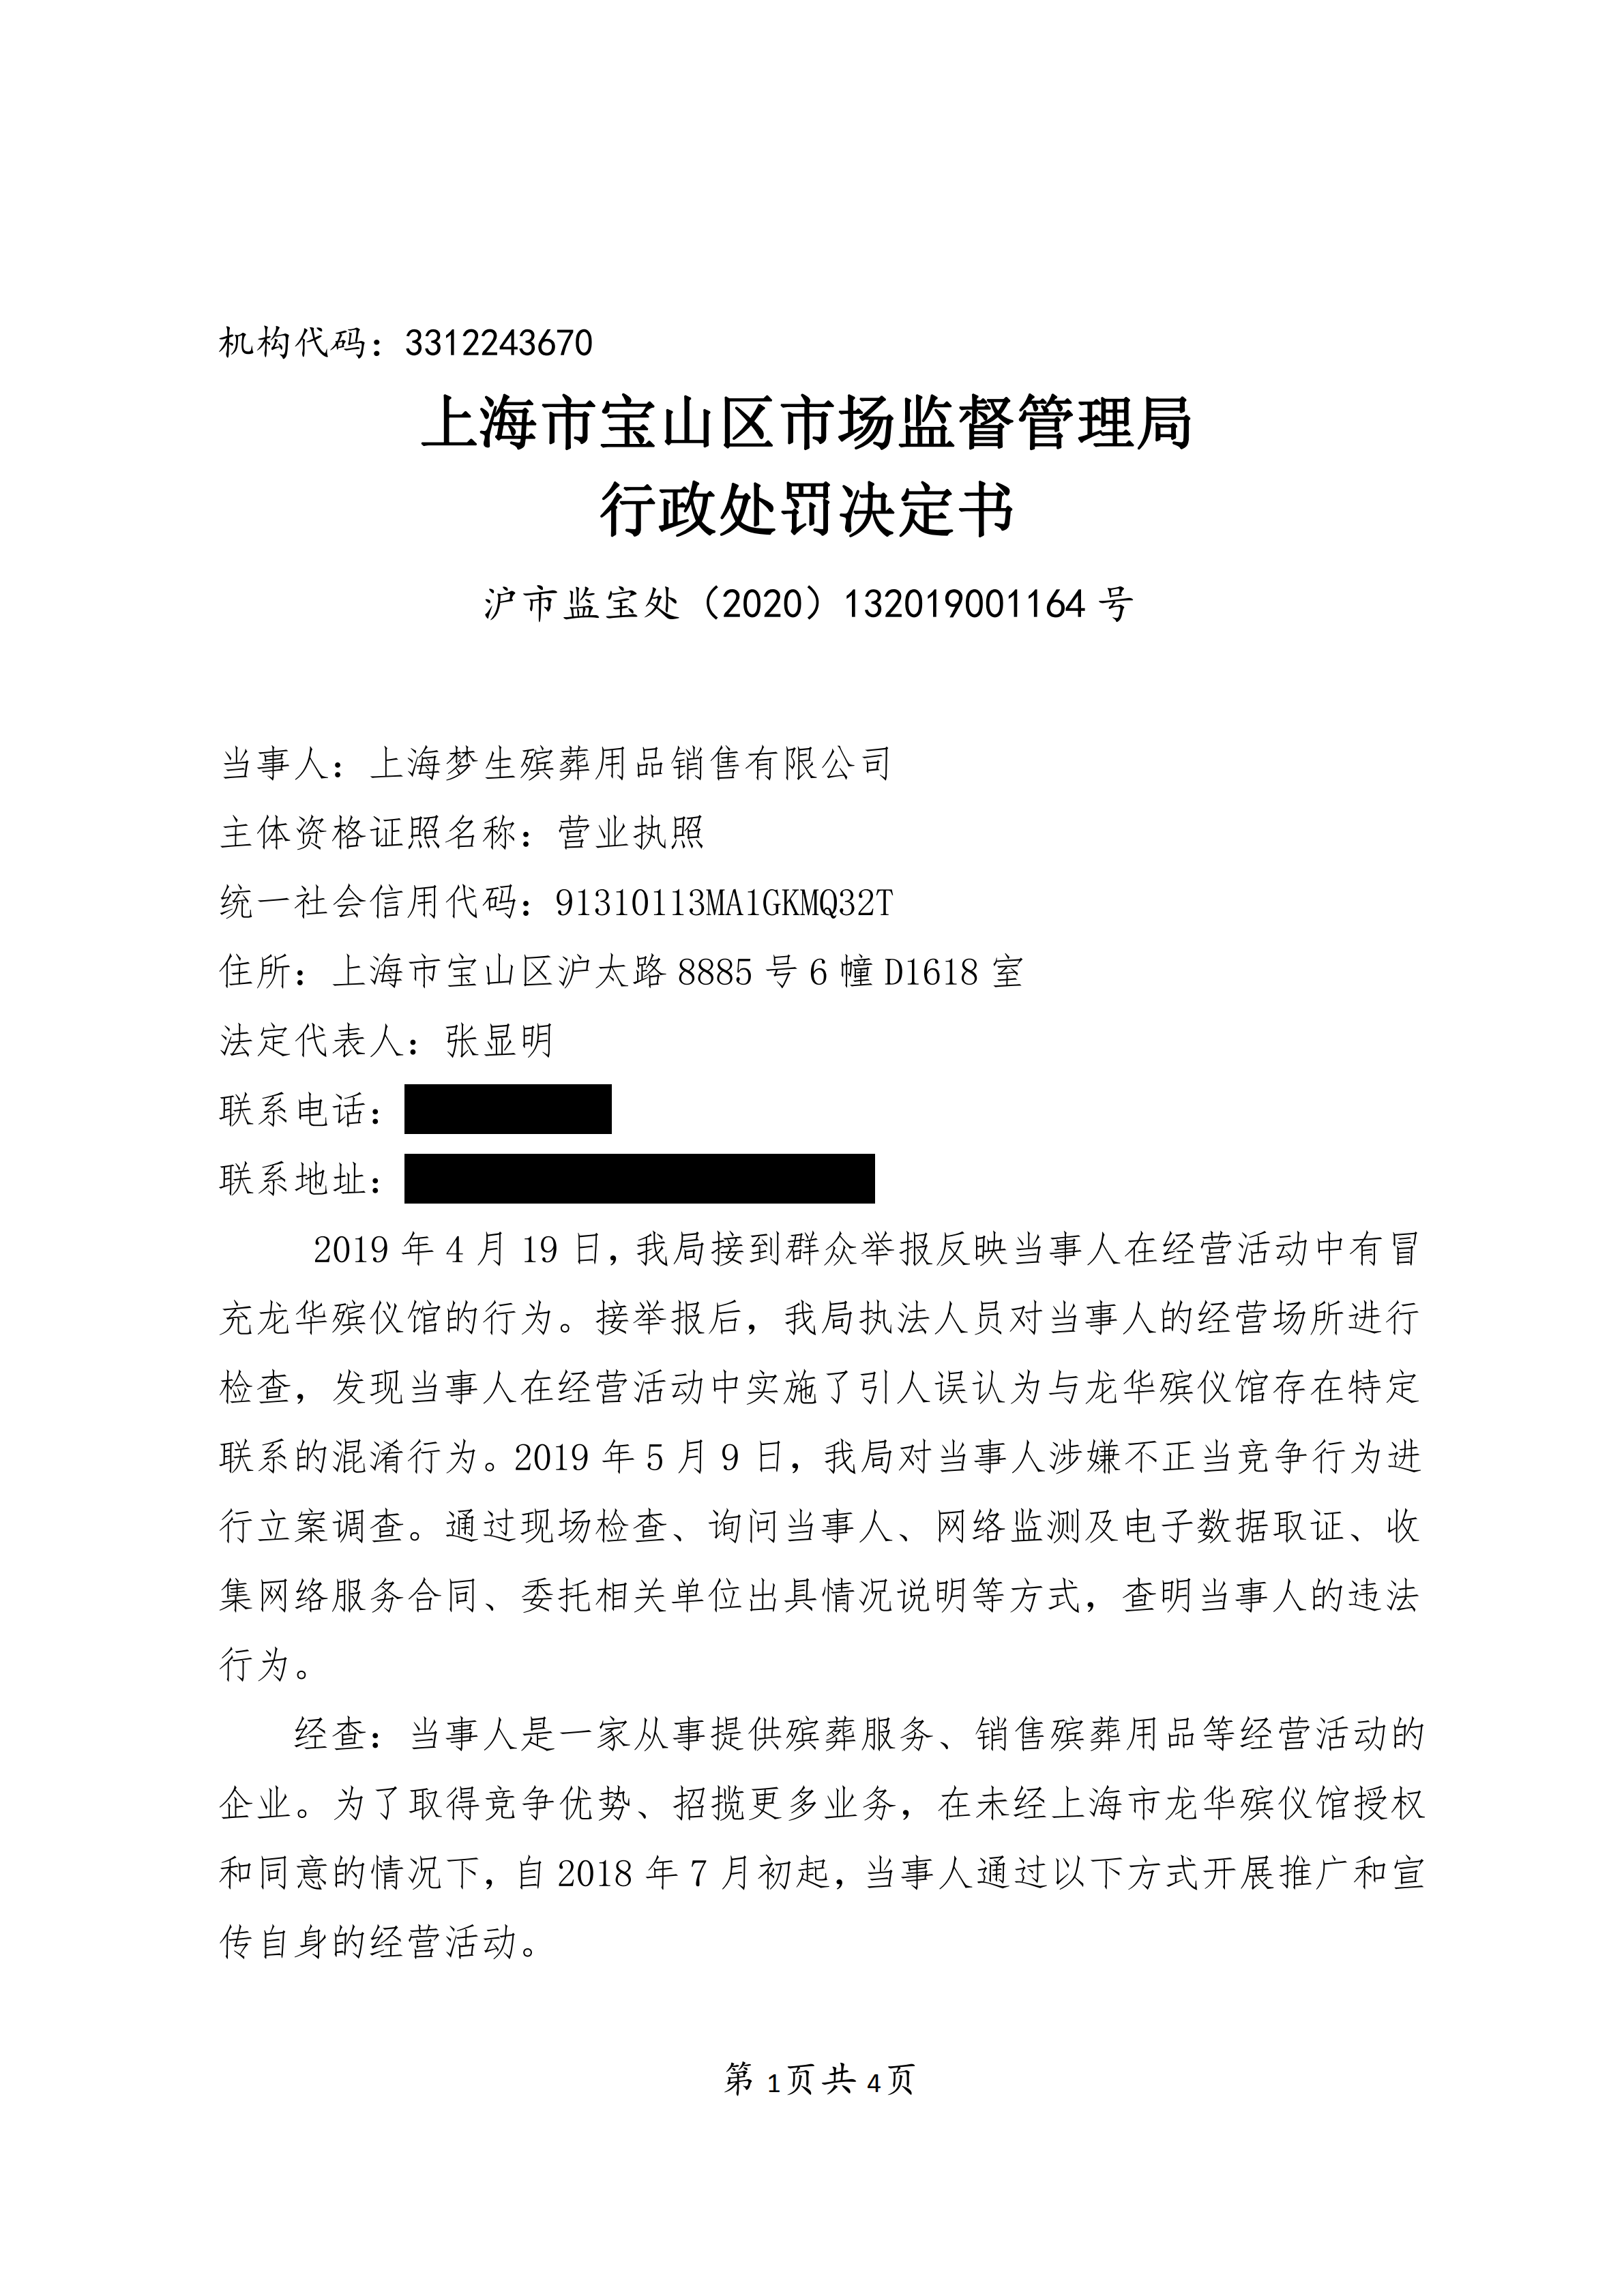 上海梦生殡葬用品销售有限公司不正当竞争案-行政处罚书(1)_00.png